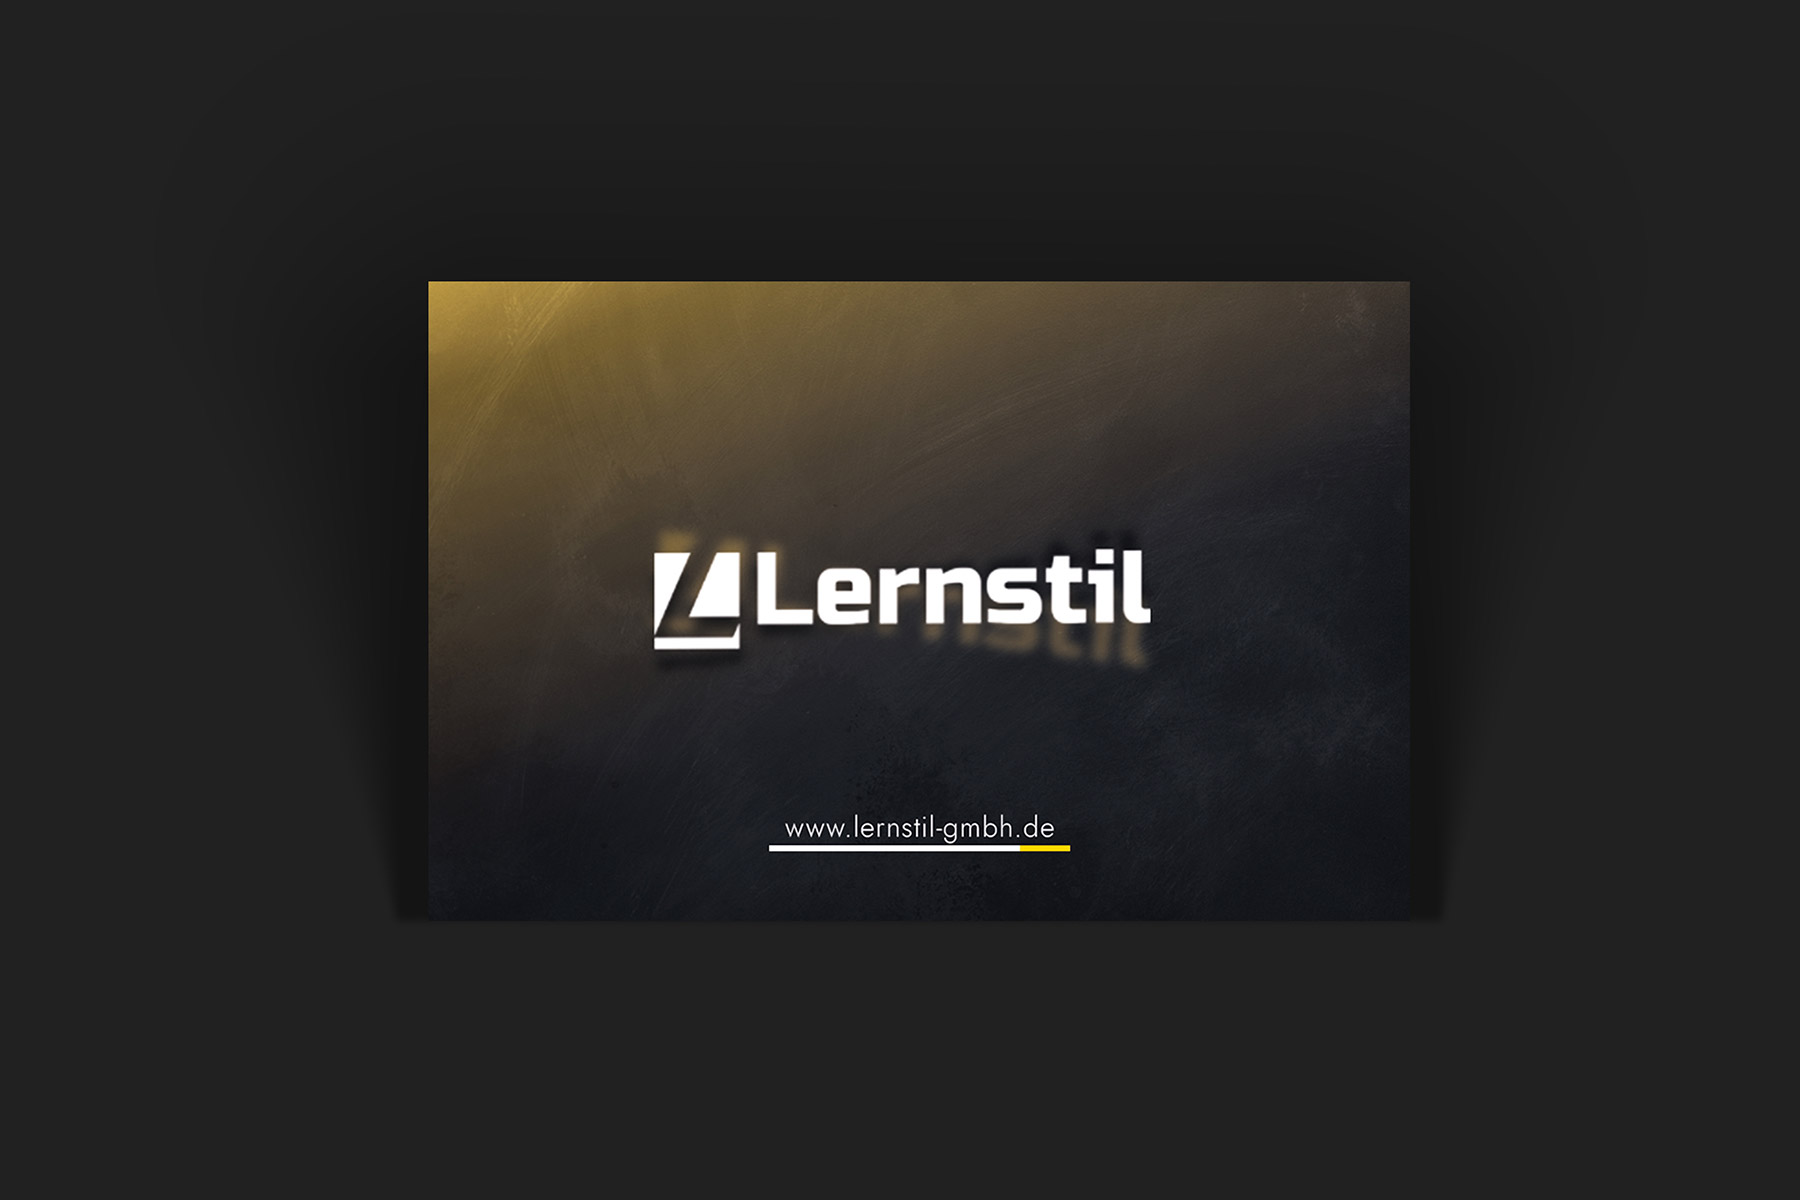 Vorderseite einer Visitenkarte mit dem Logo und der Internetadresse des Unternehmens Lernstil GmbH